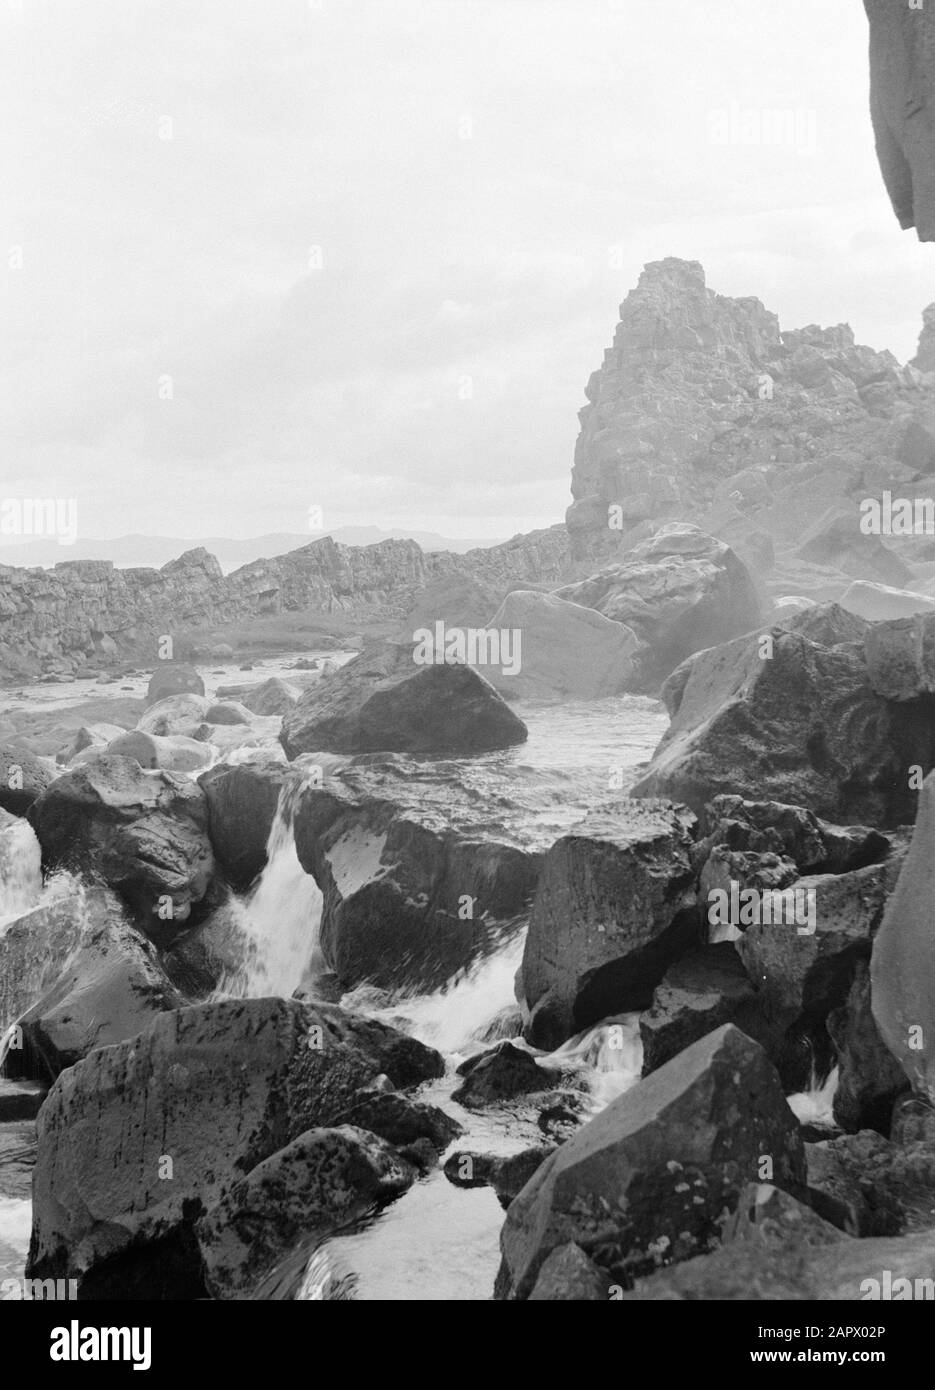 Islande Oxarfoss, parc national þingvellir. Vue d'une partie de la cascade Date: 1934 lieu: Islande, Öxarárfoss, Þingvellir mots clés: Paysages, parcs nationaux, rivières, rochers, cascades Banque D'Images